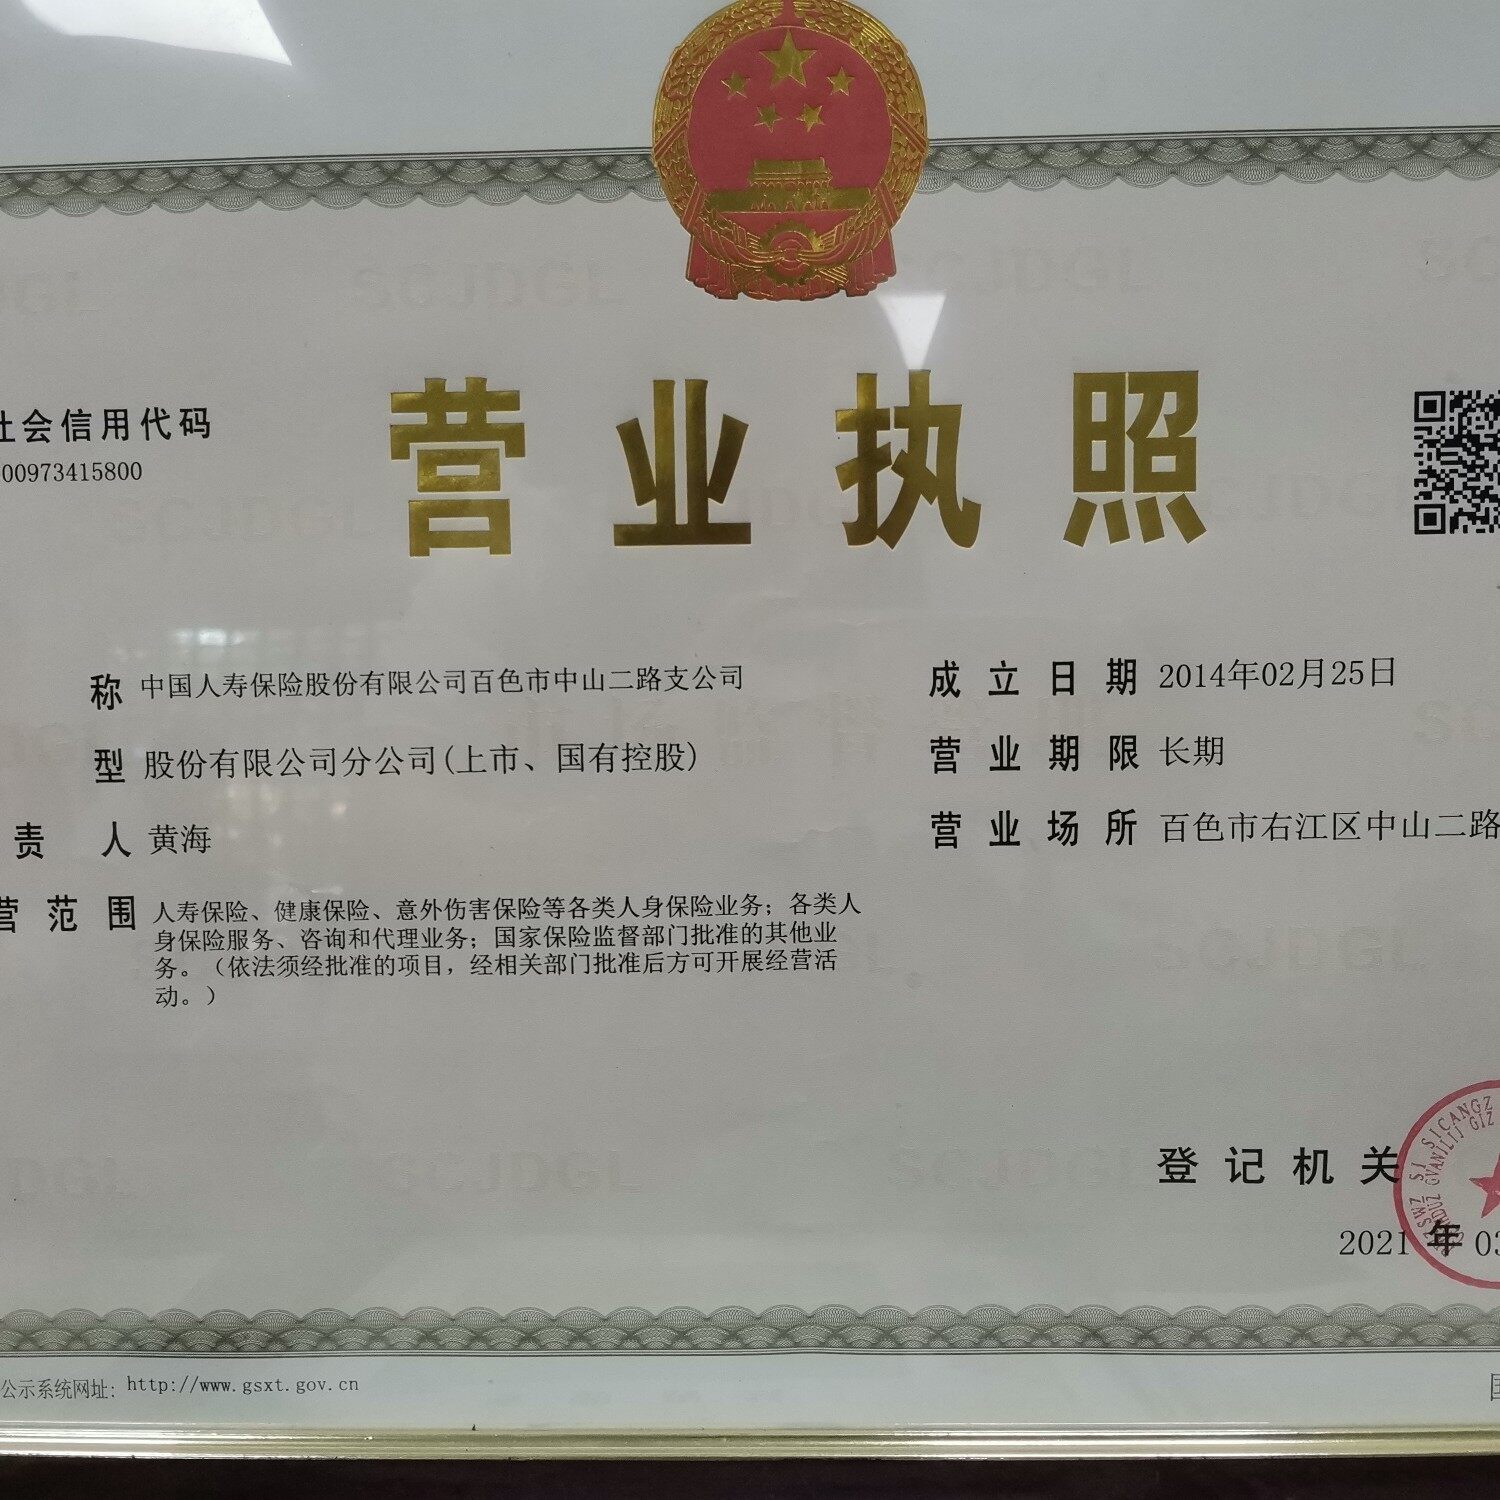 中国人寿保险股份有限公司百色市中山二路支公司logo